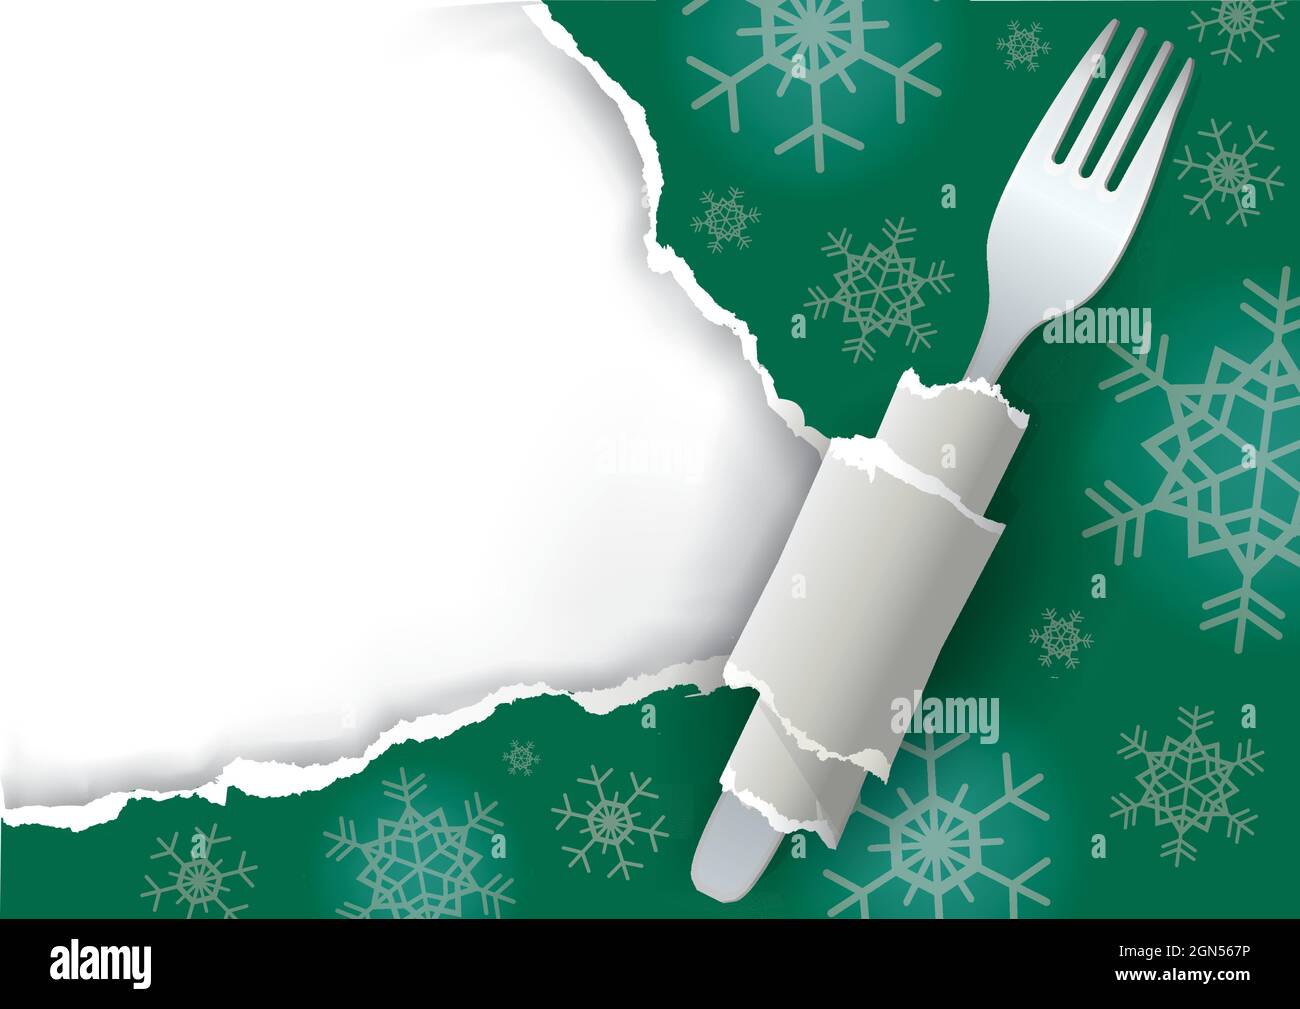 Menu Natale verde strappato sfondo carta. Illustrazione di carta verde strappata con forchetta e fiocchi di neve. Inserire il testo o l'immagine.vettore disponibile Illustrazione Vettoriale